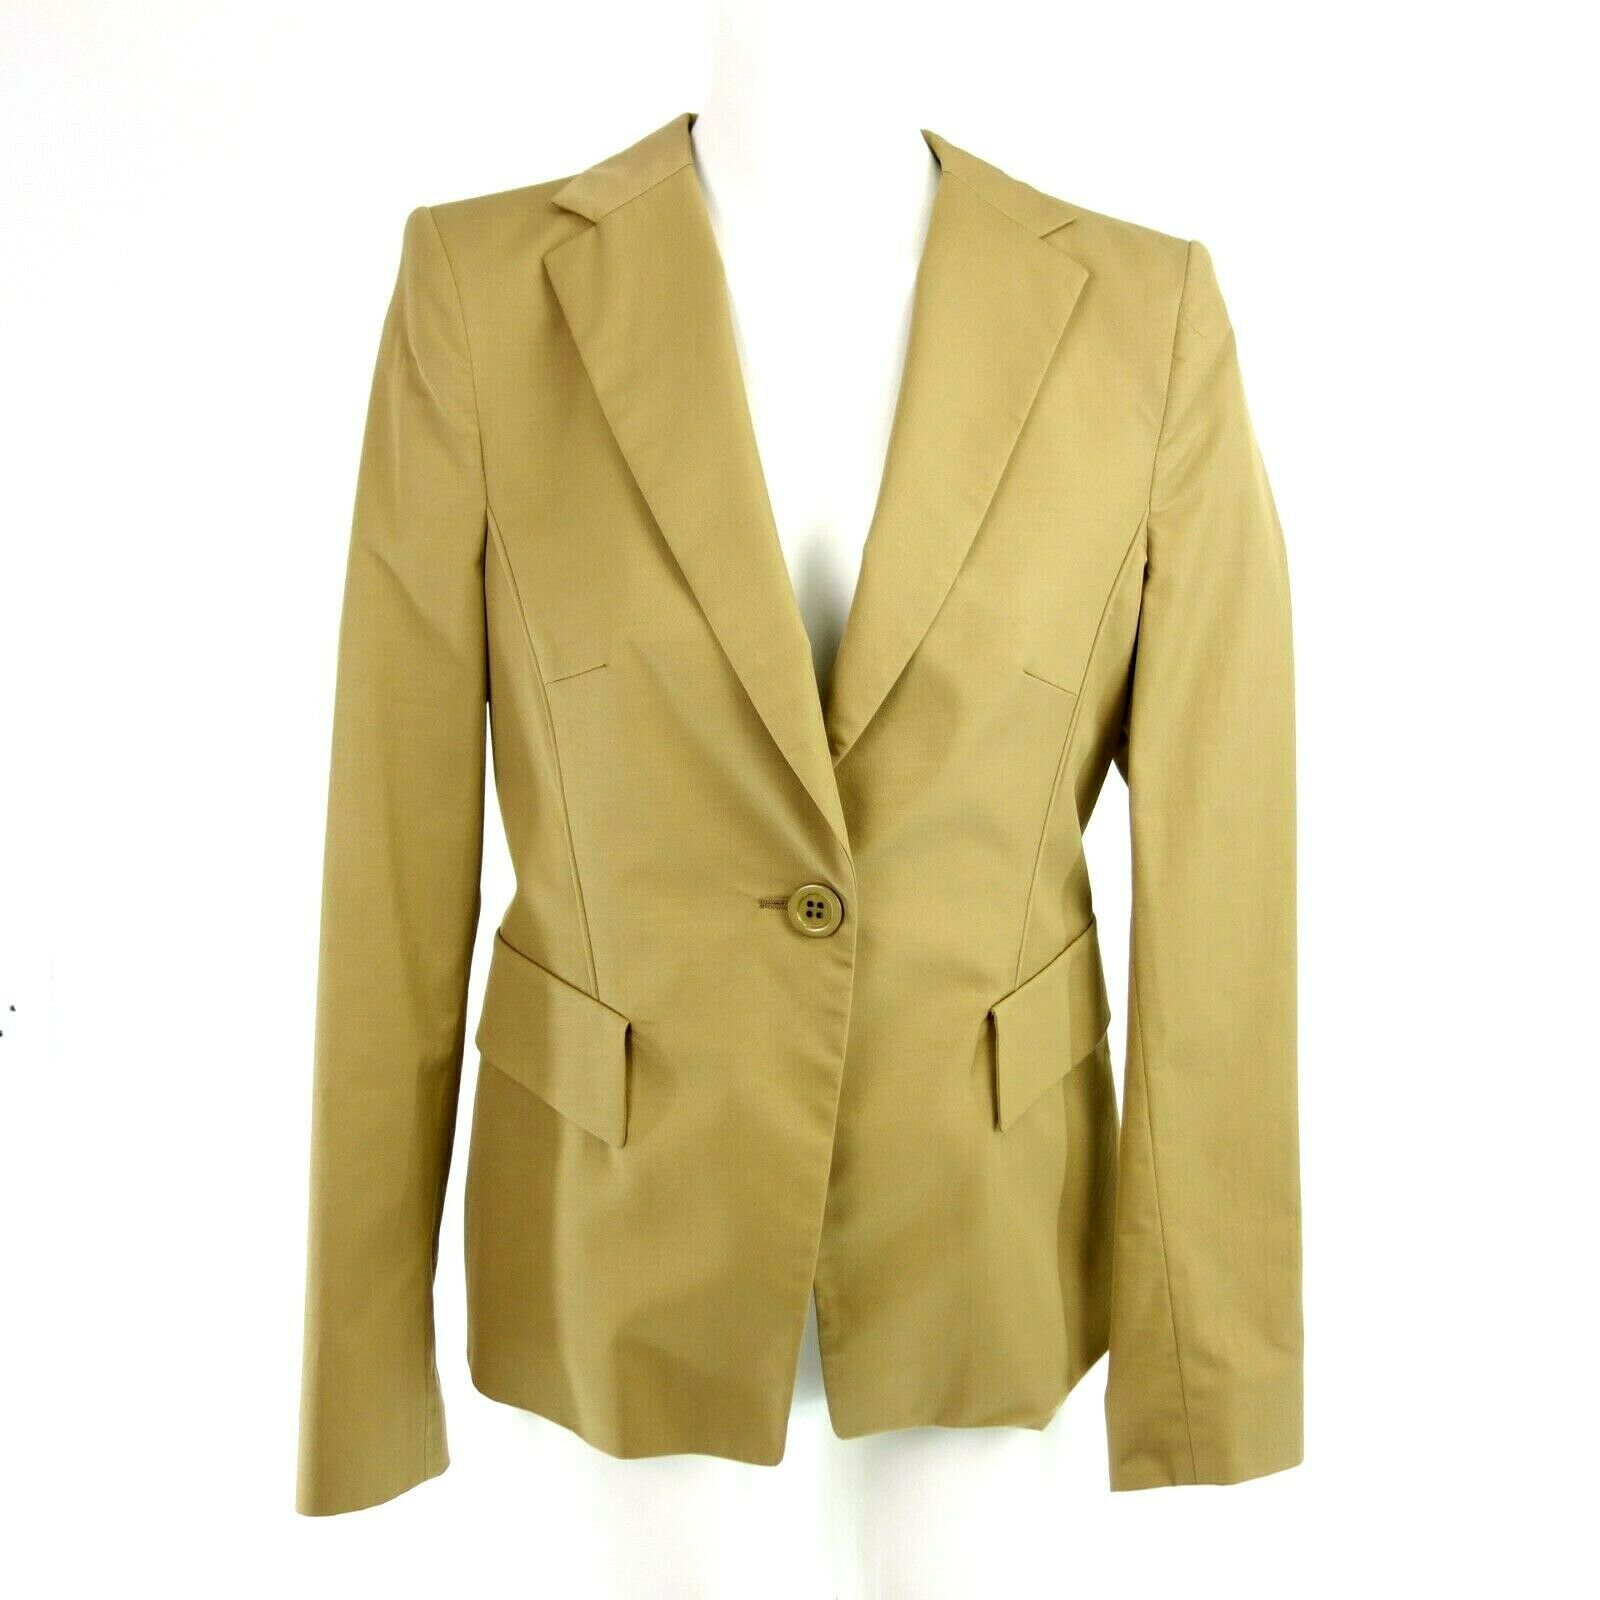 SCHUMACHER Business Damen Blazer Jacke Jacket Beige Elegant Einreiher Gr 40